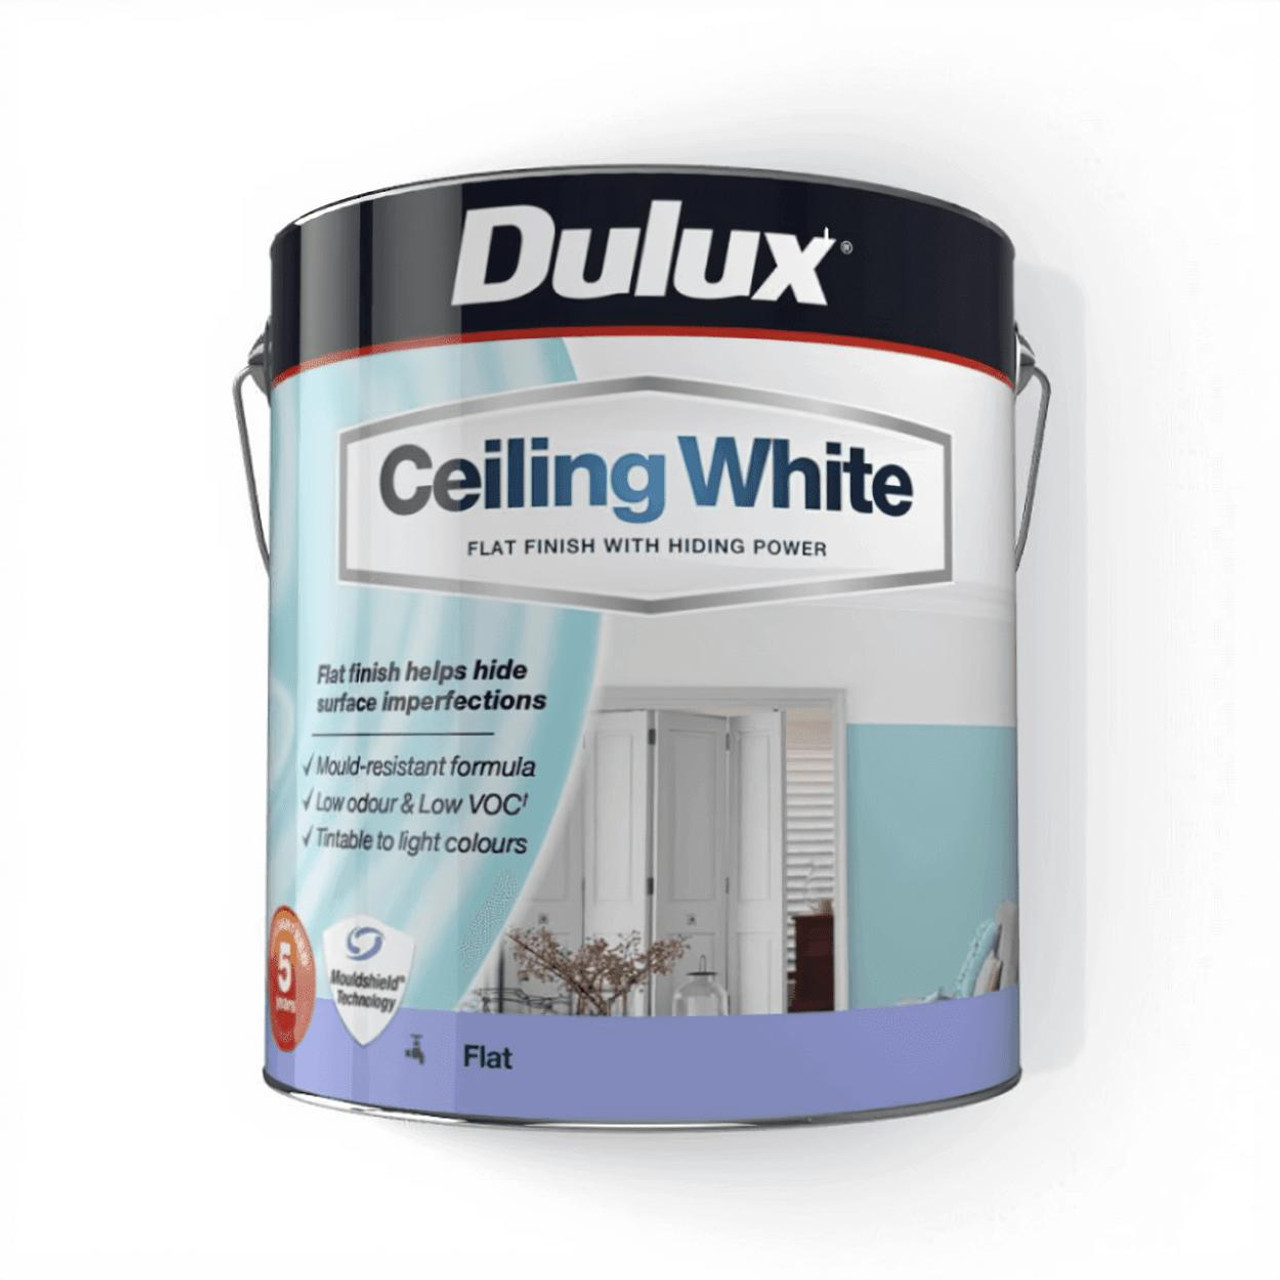  Dulux Ceiling White: Flat, High-Hiding Ceiling Paint 4L 